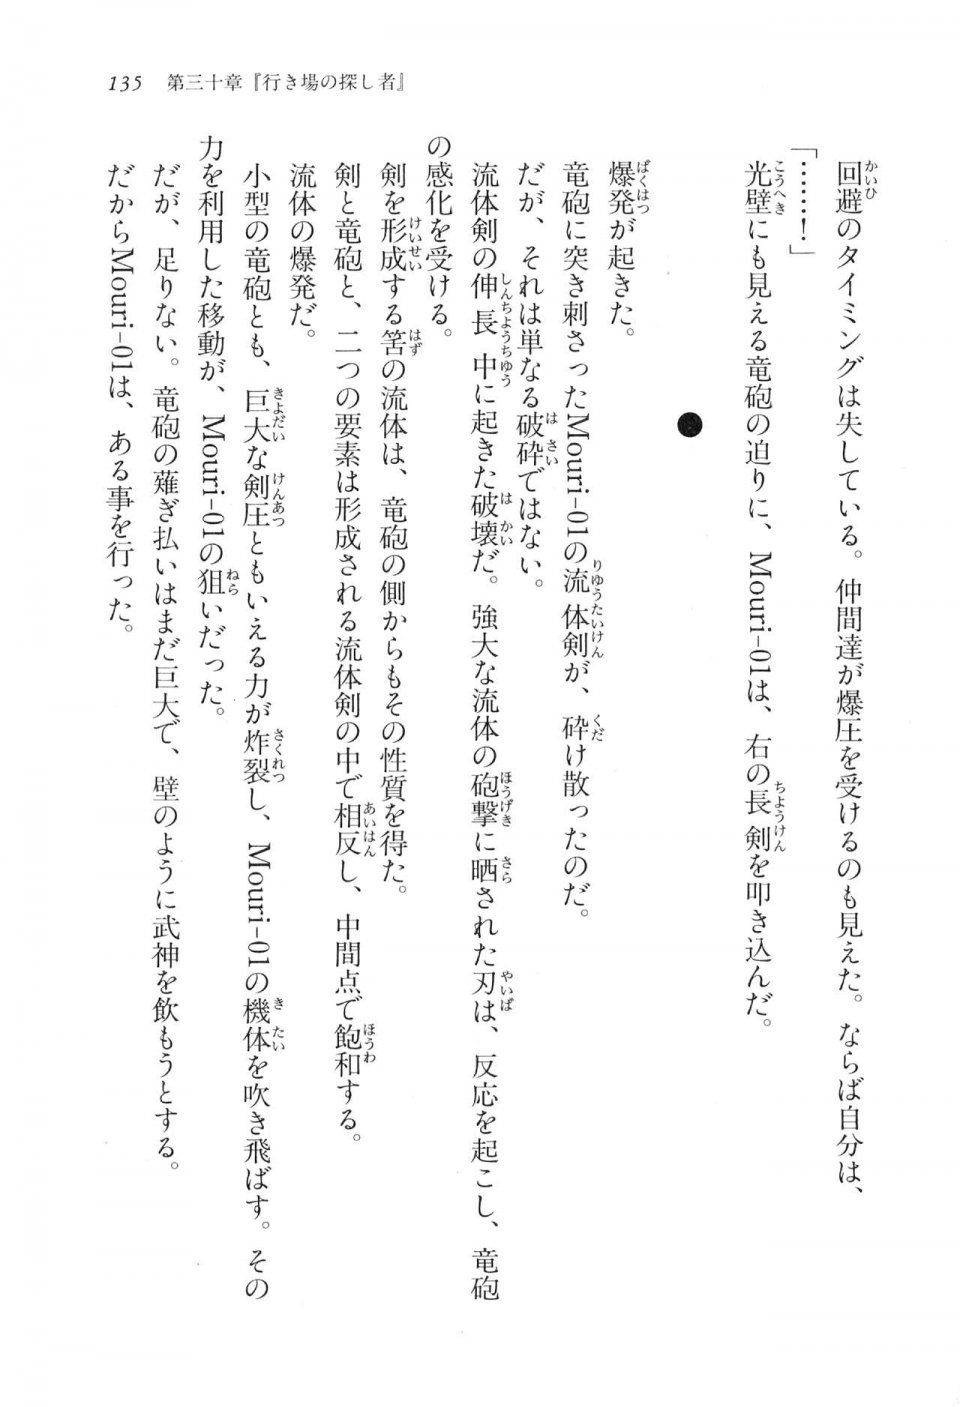 Kyoukai Senjou no Horizon LN Vol 17(7B) - Photo #135